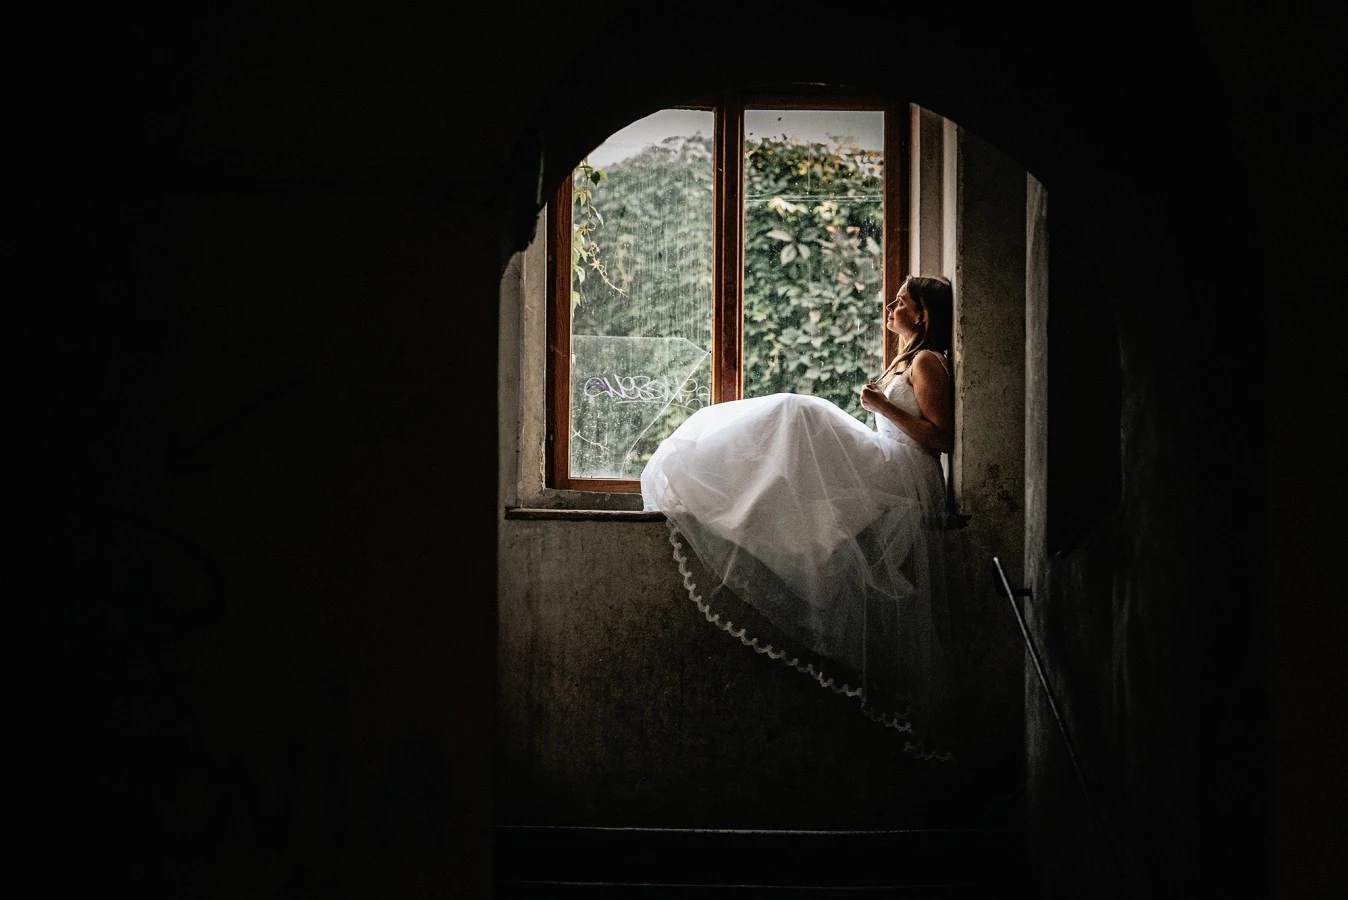 fotograf kielce zatrzymacchwile portfolio zdjecia slubne inspiracje wesele plener slubny sesja slubna